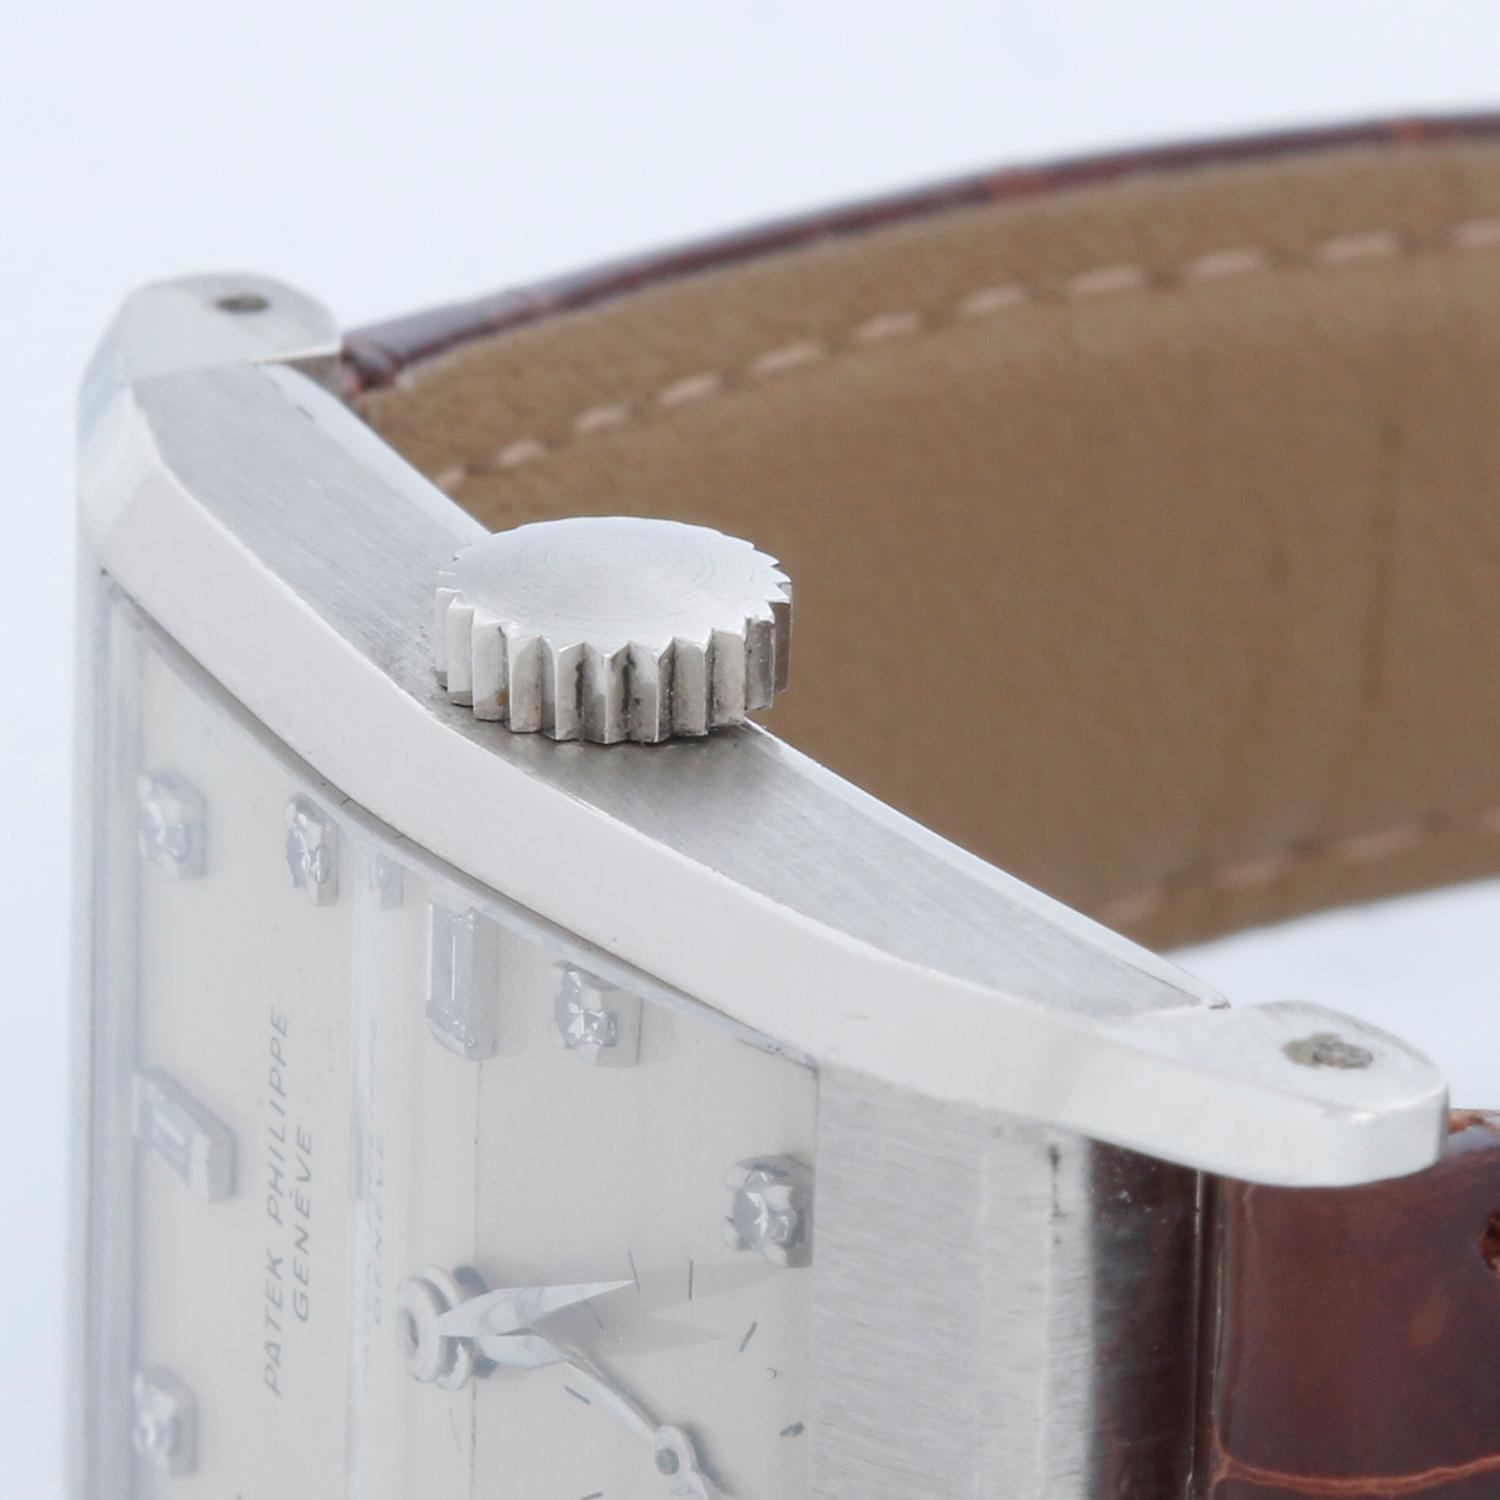 Patek Philippe & Co. - Vintage Montre en platine Ref 2461 - Remontage manuel. Boîtier rectangulaire en platine avec cristal facetté d'origine et facettes nettes du boîtier   (22 x 42 mm). Cadran argenté avec index en diamant. Bracelet marron avec